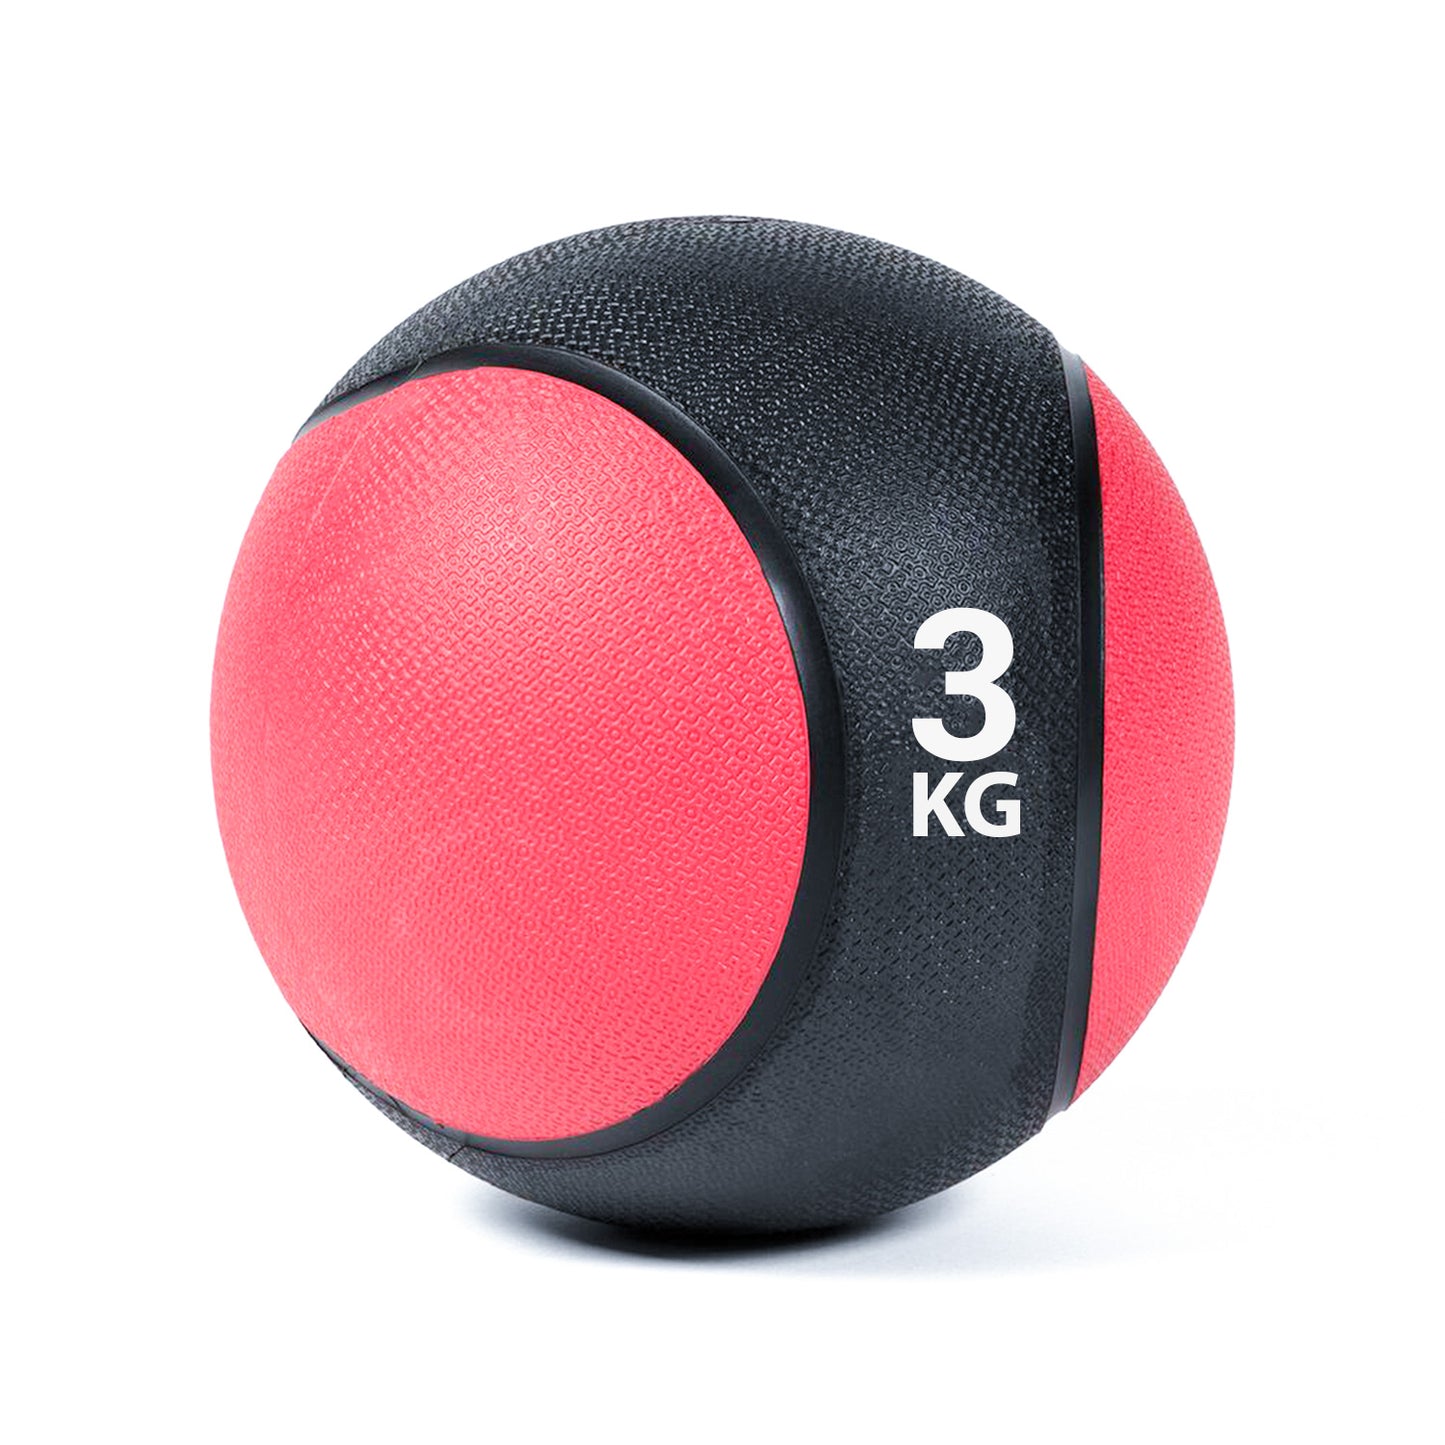 كرة طبية من المطاط لاعادة التأهيل و اللياقة البدنية - لون اسود و احمر - وزن 3 كيلو جرام